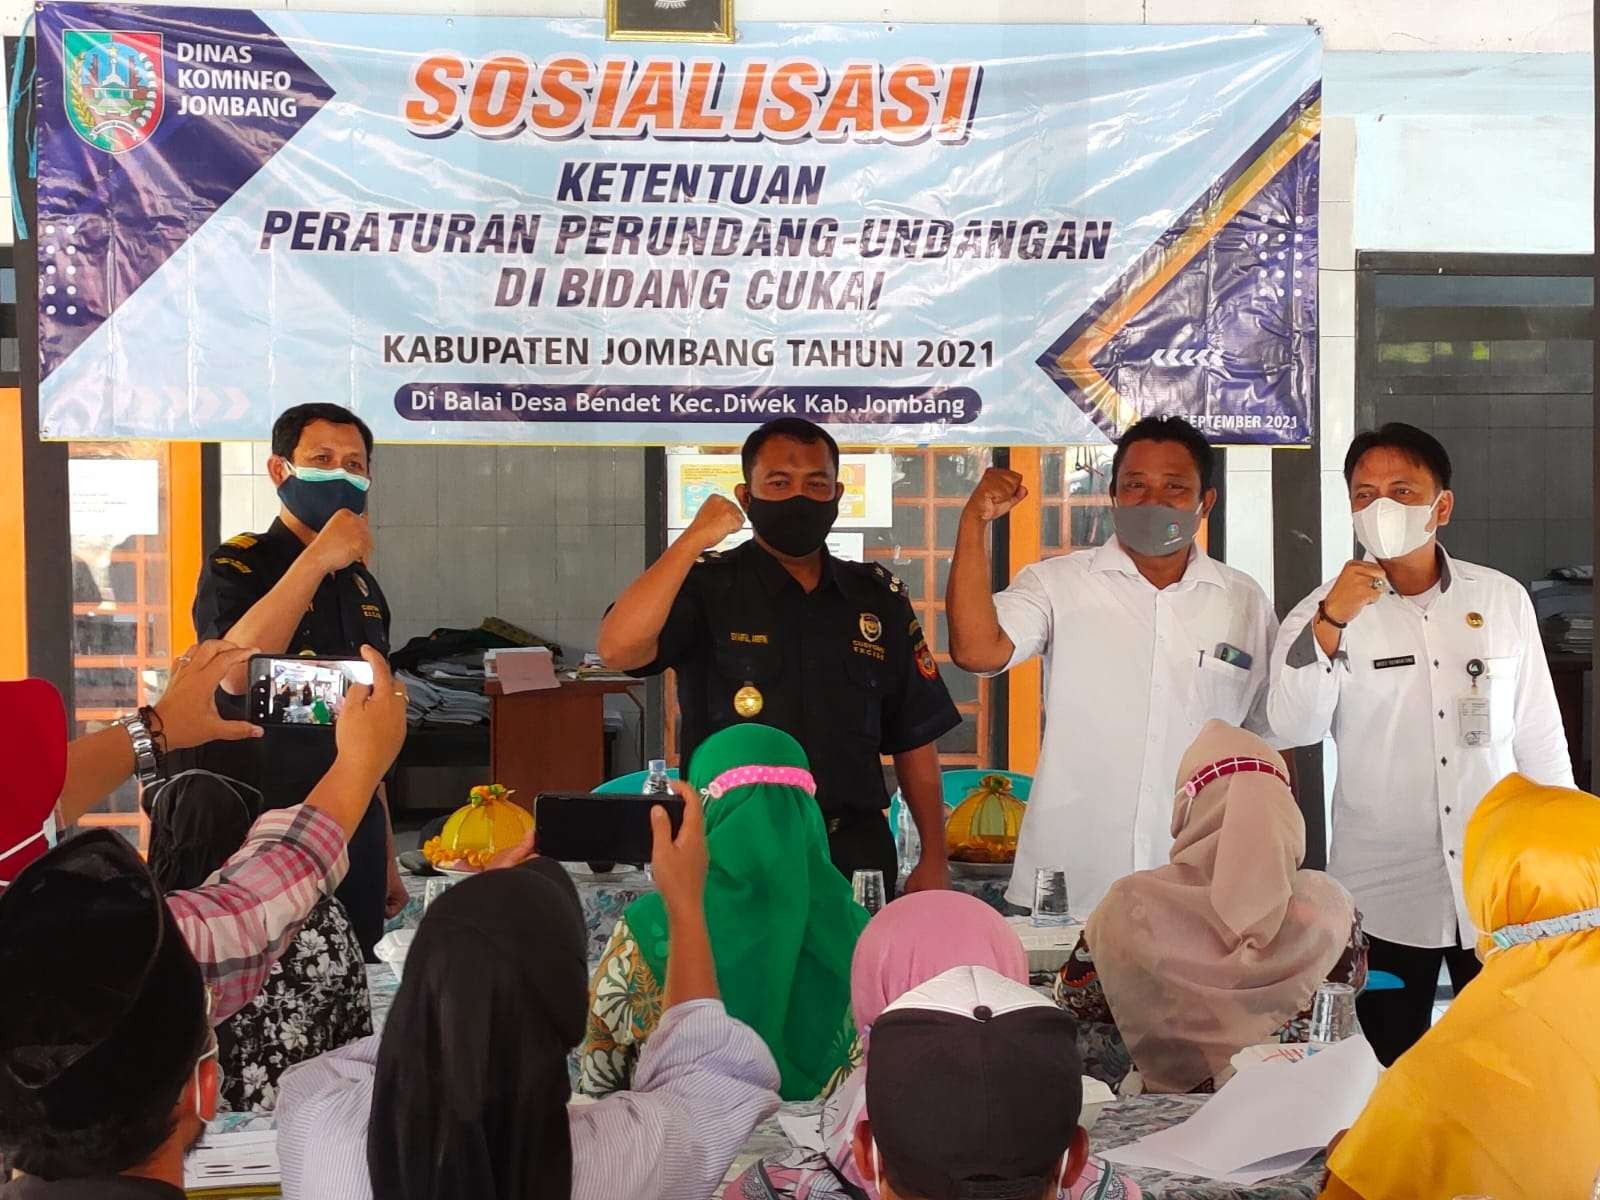 Sosialisasi ketentuan peraturan perundang-undangan bidang cukai dengan tajuk Gempur Rokok Ilegal di Desa Bendet, Kecamatan Diwek, Kabupaten Jombang, Rabu 1 September 2021. (Foto: Istimewa)